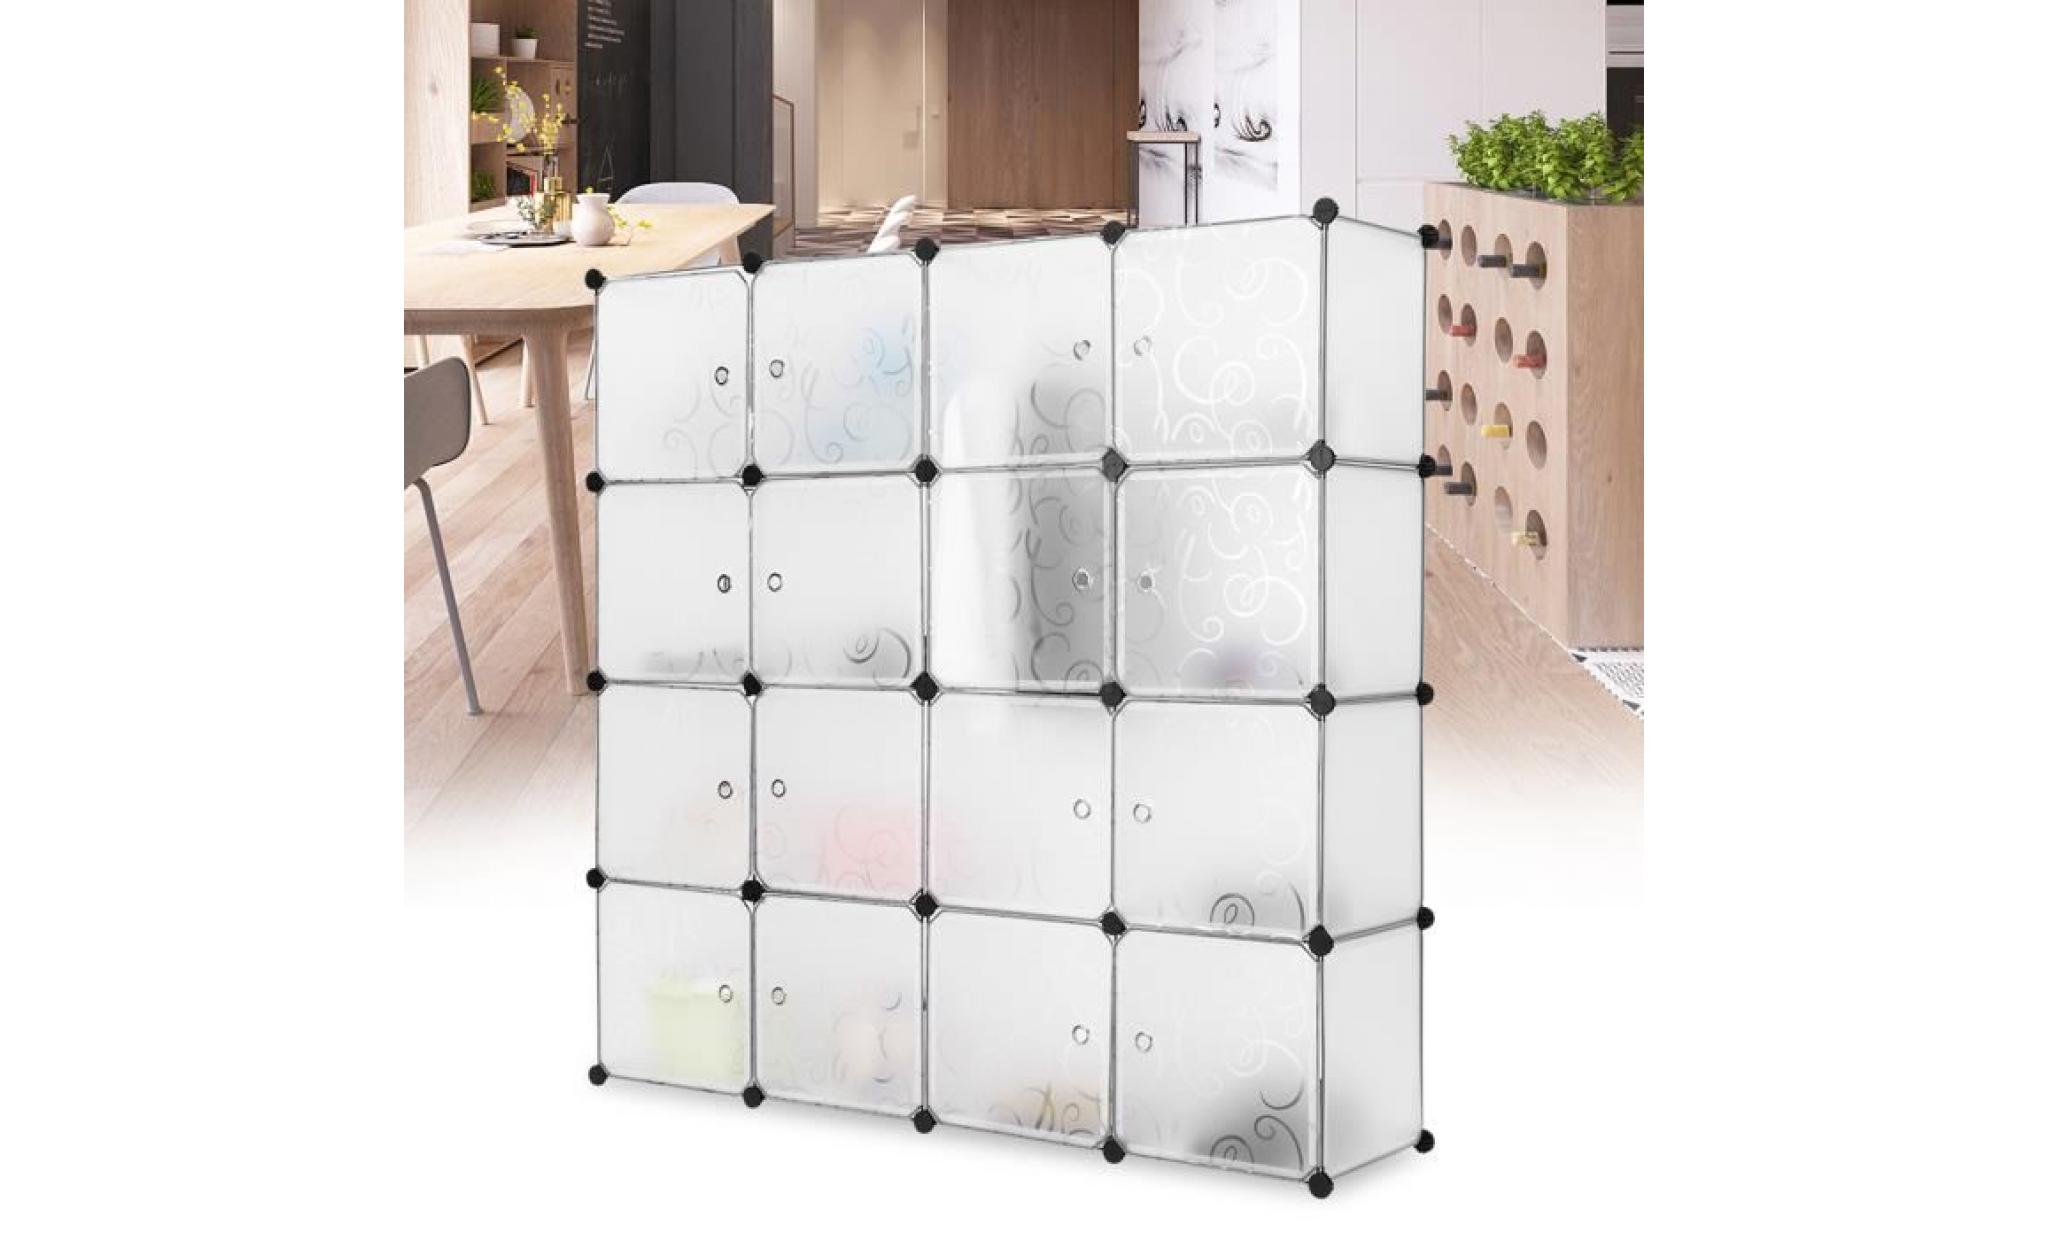 langria 16 cube interverrouillage modulaire organisateur système placard armoire rack avec portes，translucide blanc